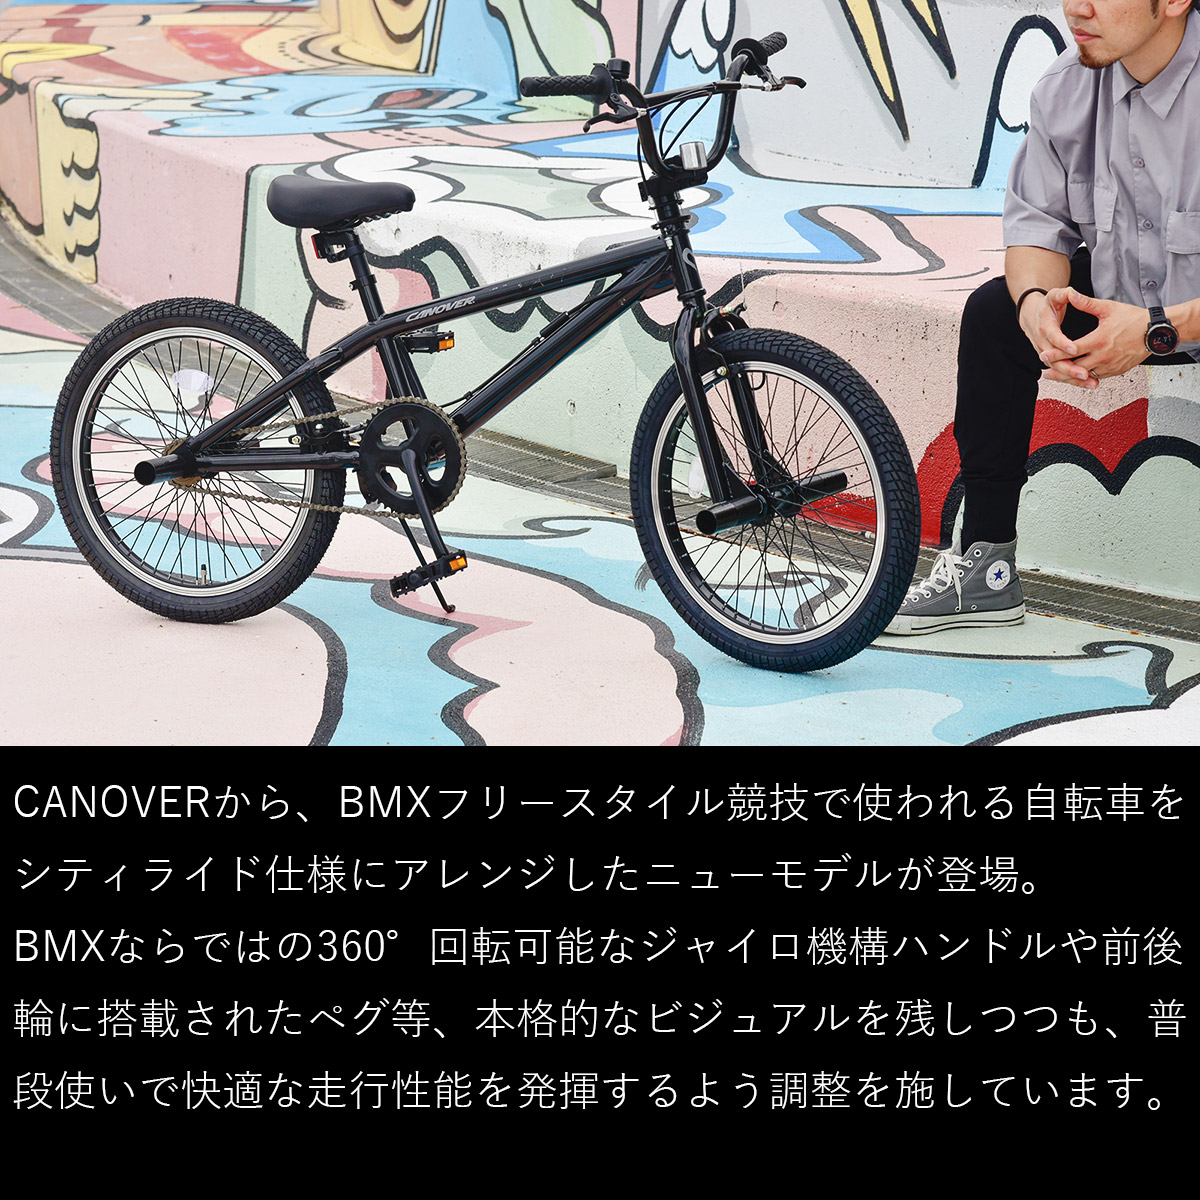 BMX 20インチ 自転車 完成品出荷 / 置き配可能 ジャイロハンドル ペグ4本 スタンド付属 ストリートバイク カノーバー CANOVER  CA-X1